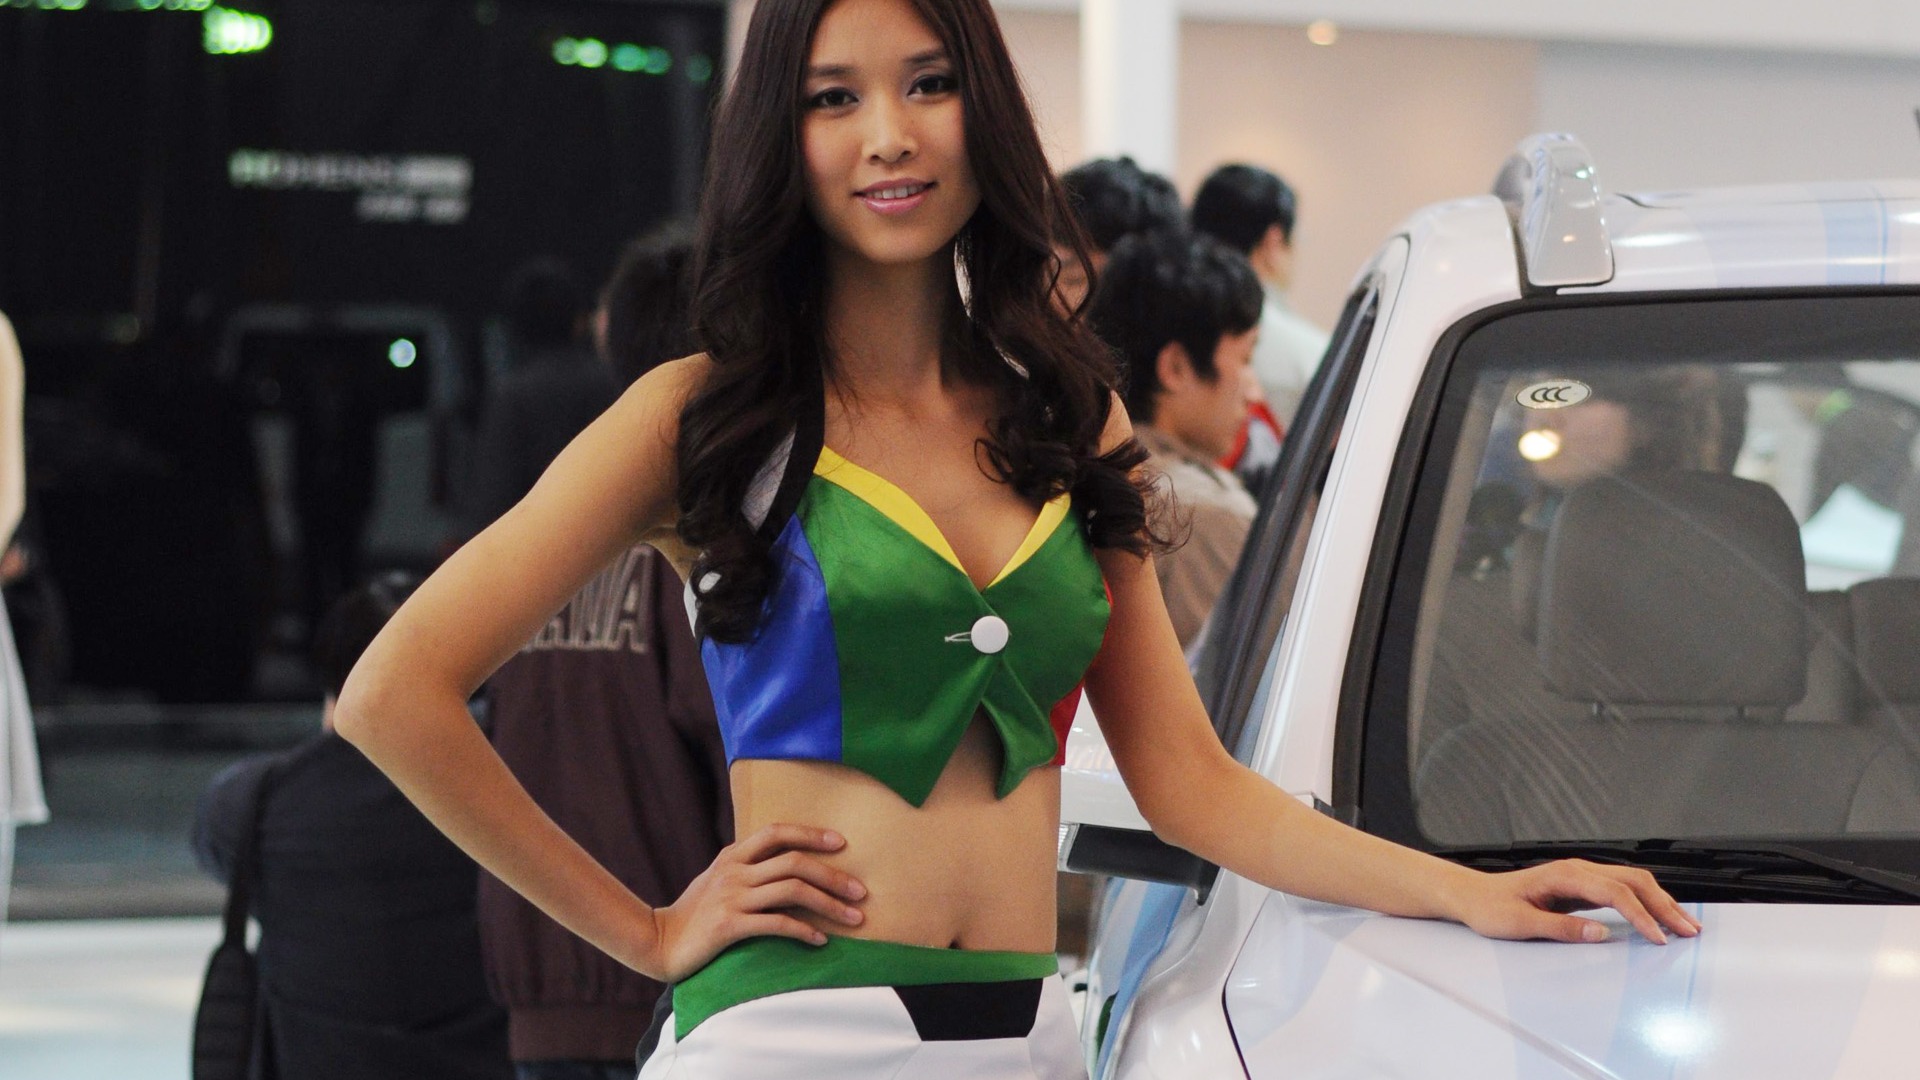 2010 Beijing International Auto Show (bemicoo works) #6 - 1920x1080